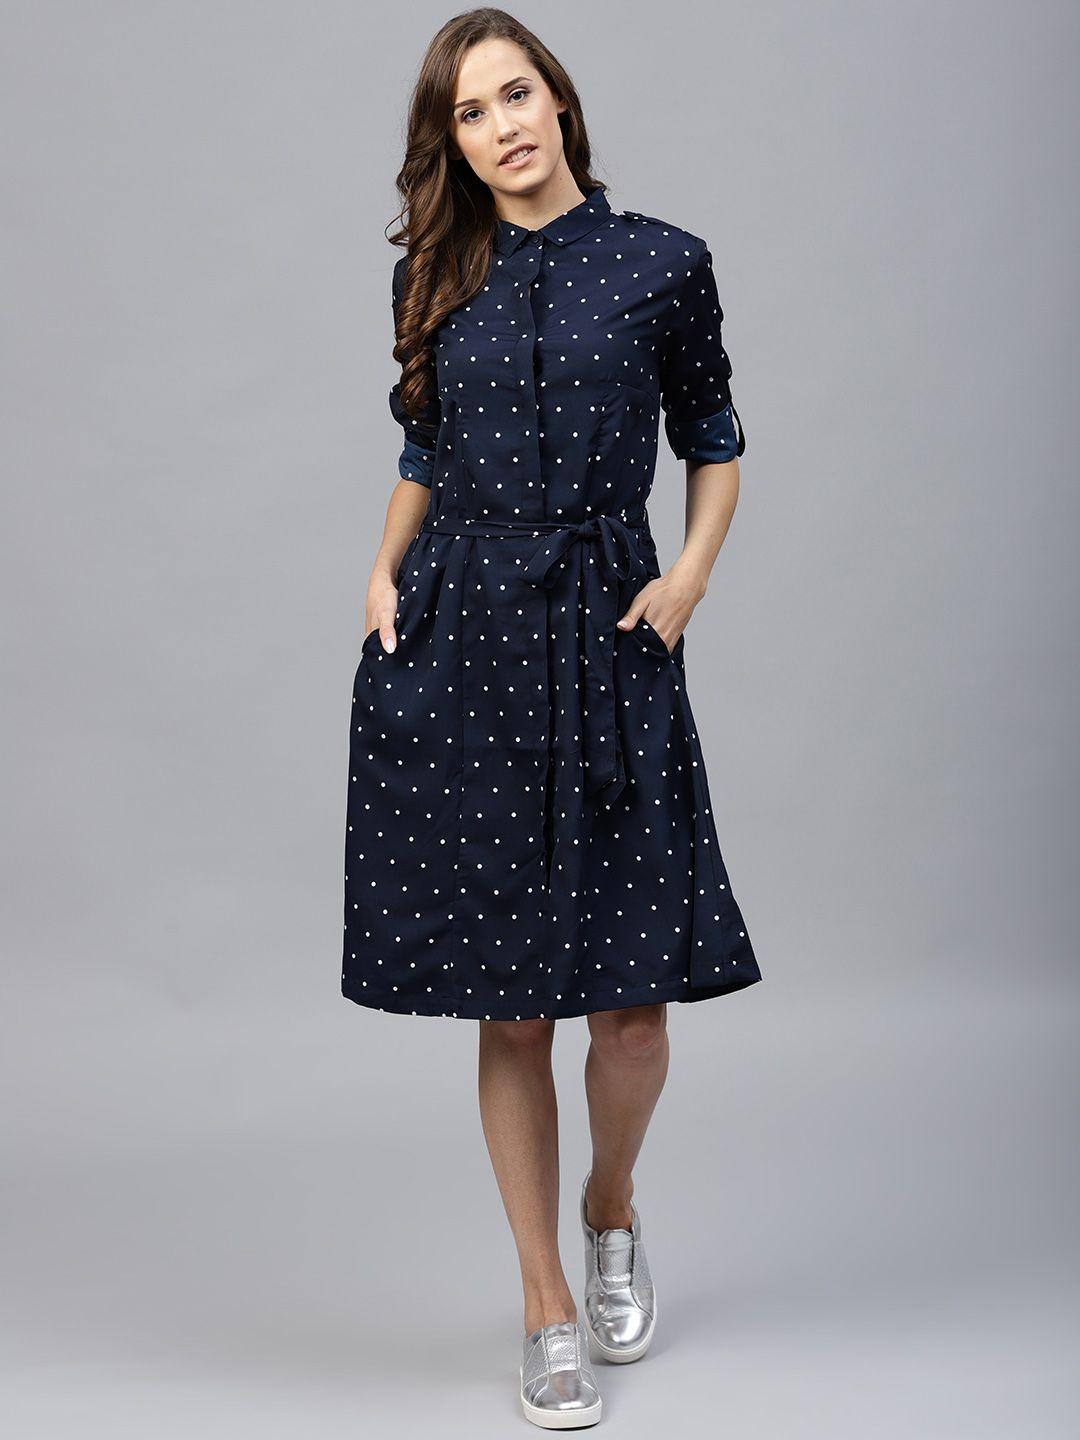 tokyo-talkies-navy-blue-polka-dots-printed-shirt-dress